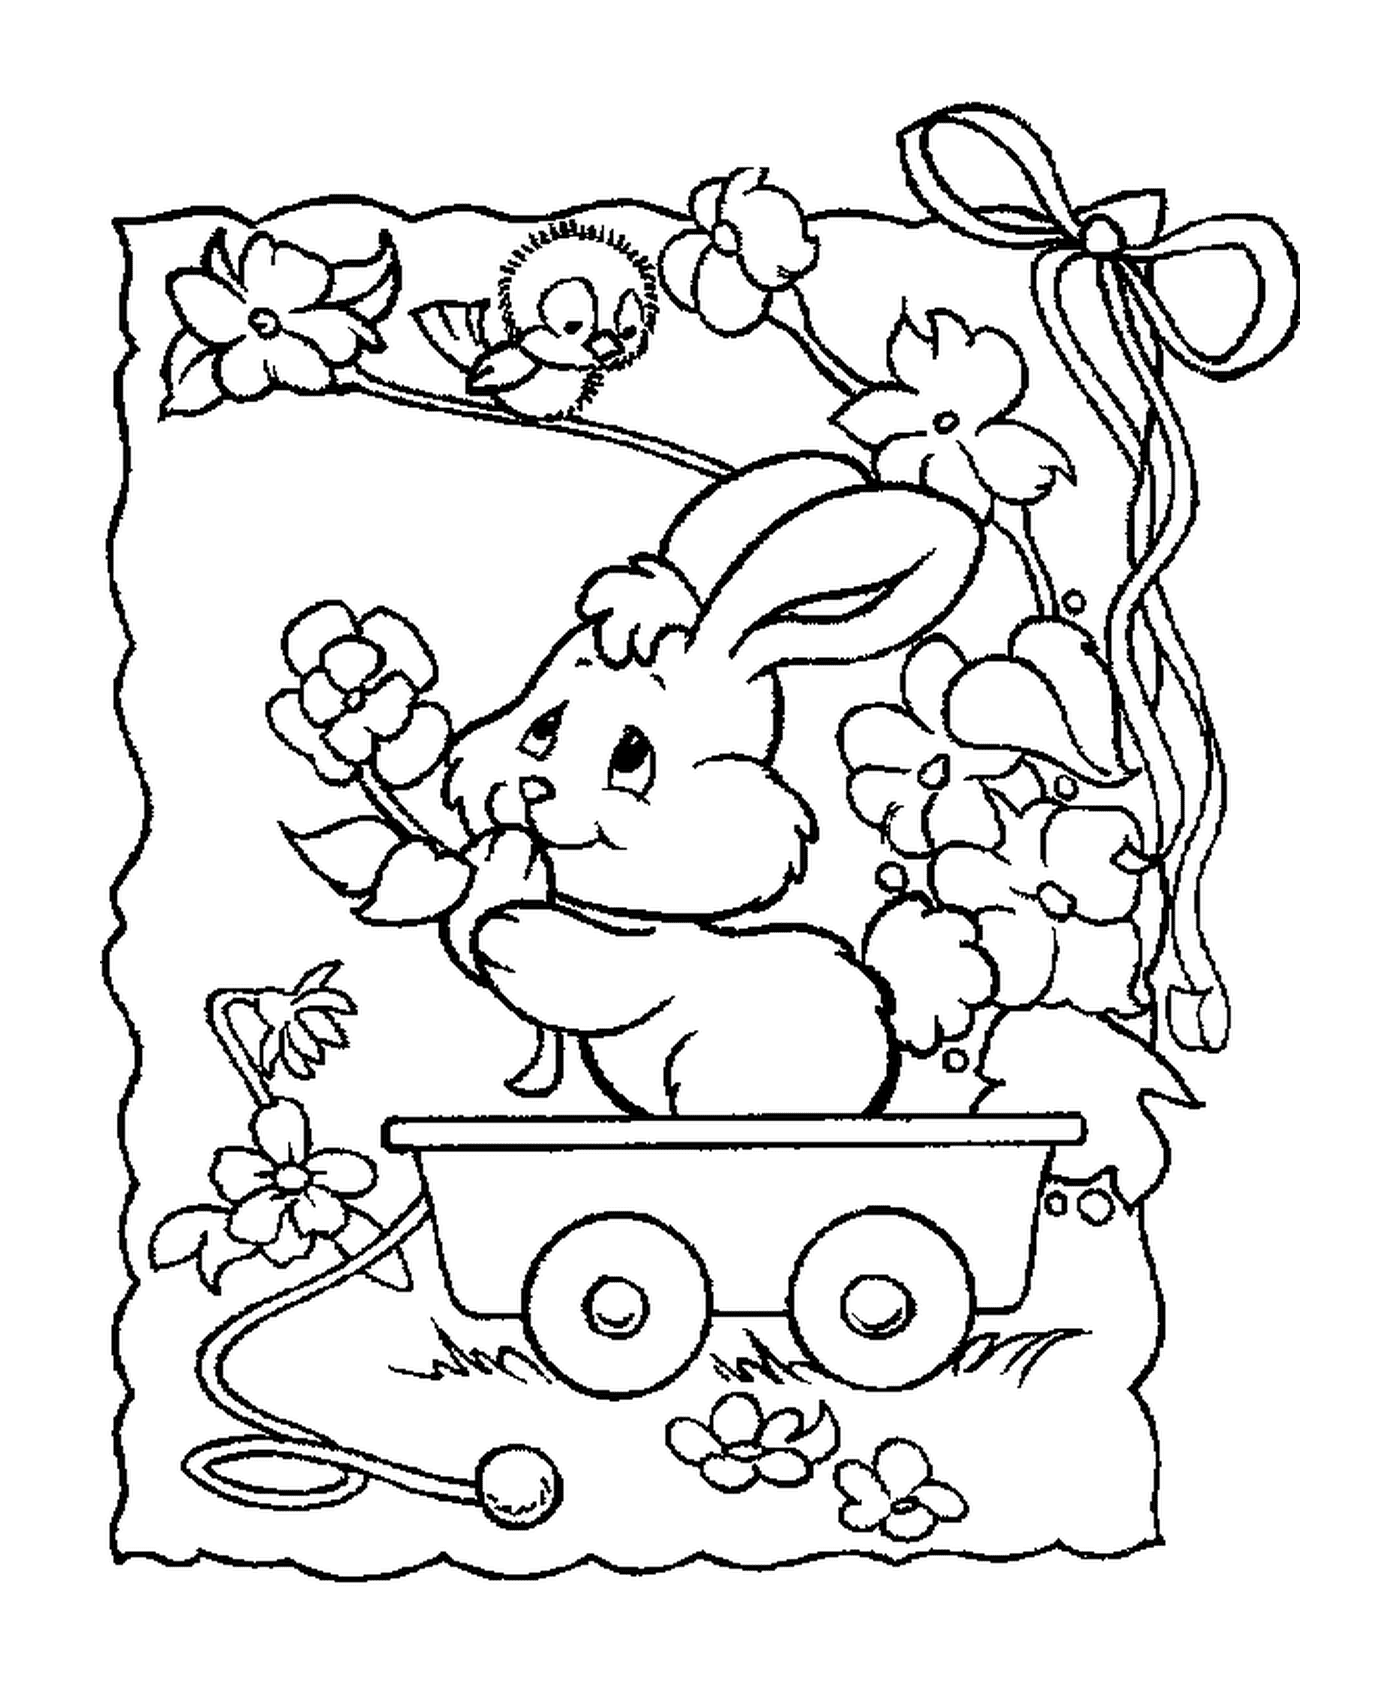  一只兔子坐在马车上 